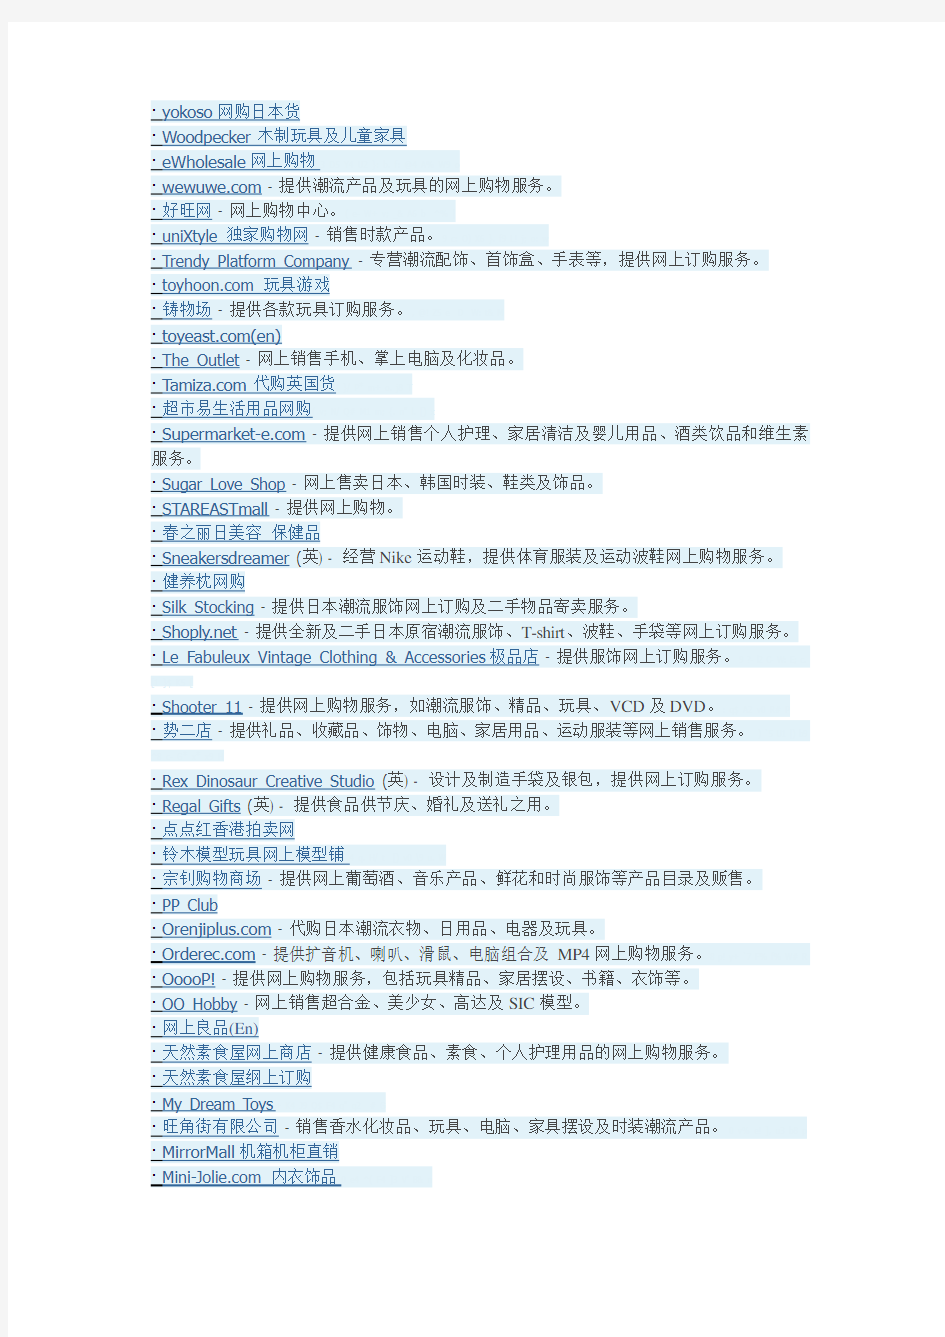 香港购物网站名单